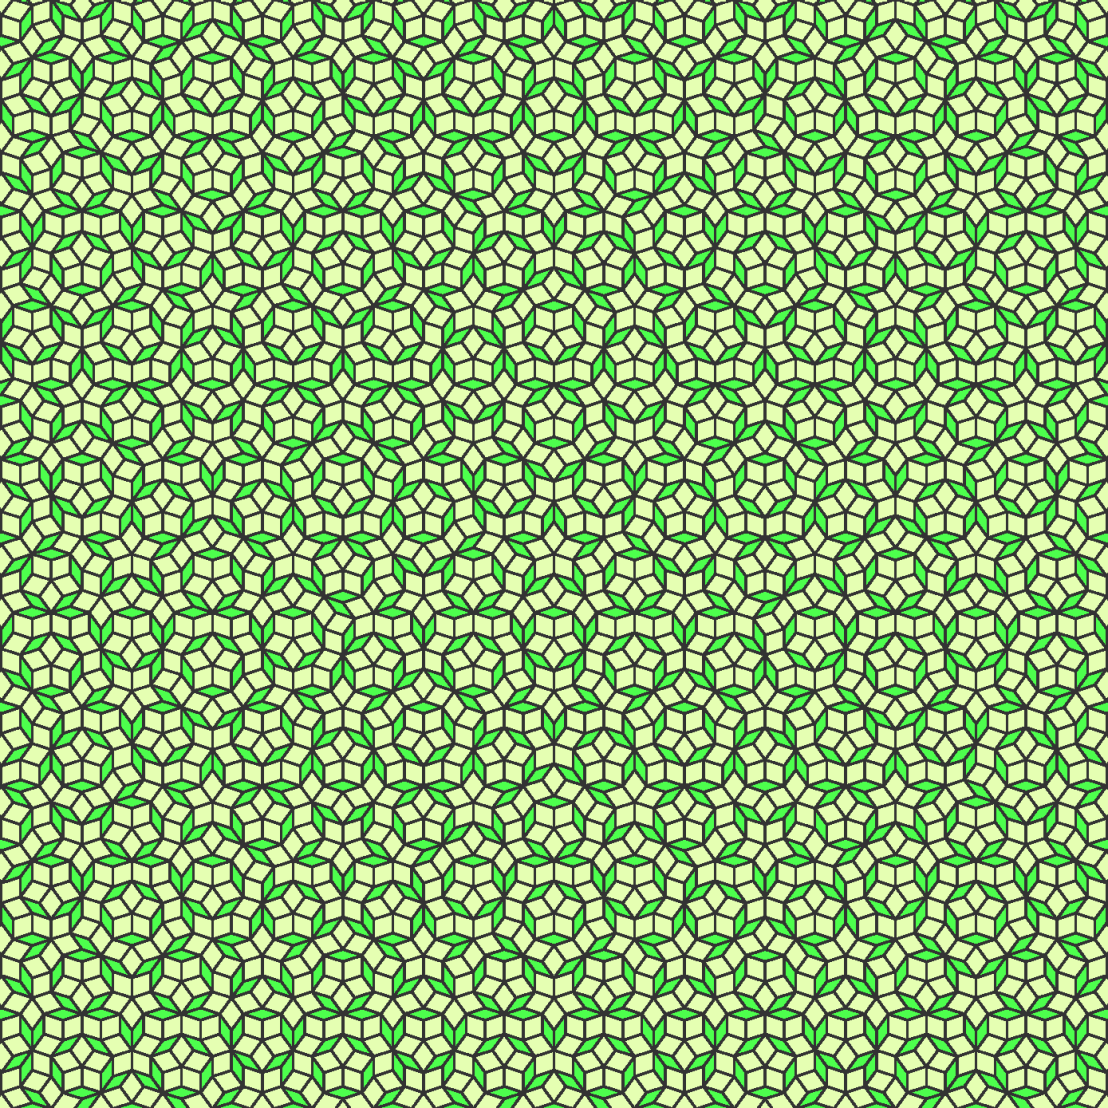 Enlarged view: Penrose tiling